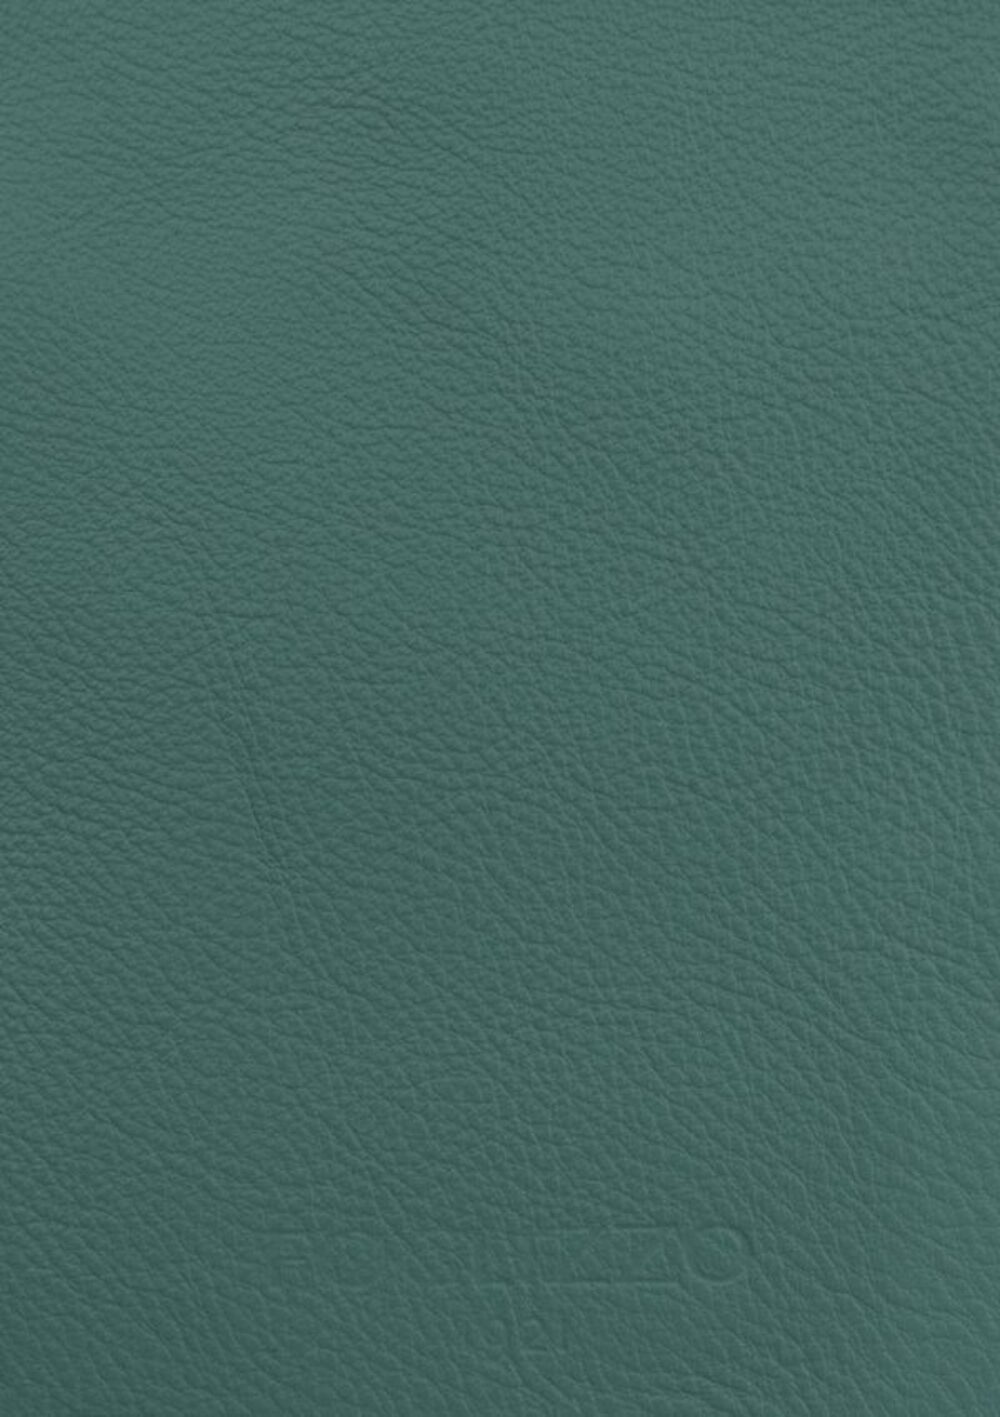 Diseño de lujo y alfombras de alta gama hechas a medida • Light Pine Green Jade